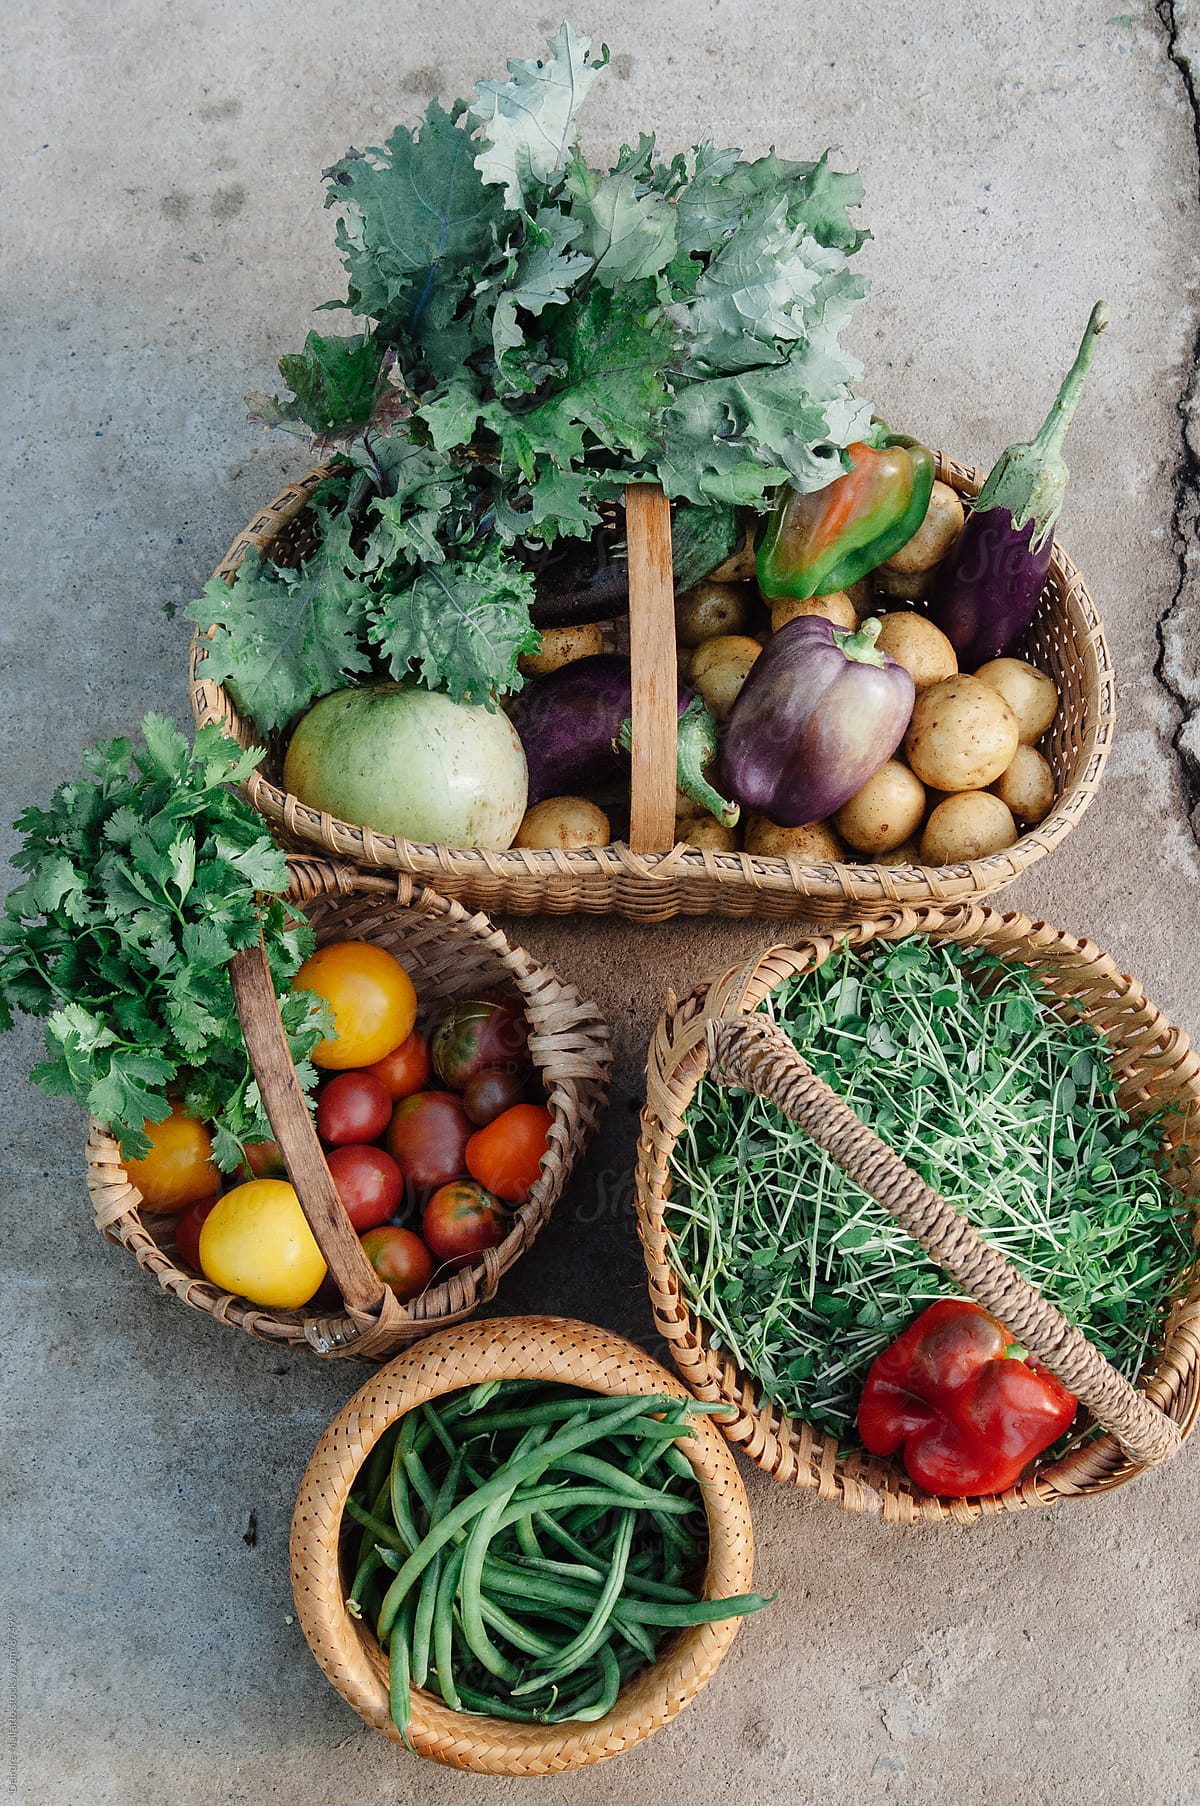 baskets of freshly harvested vegetables